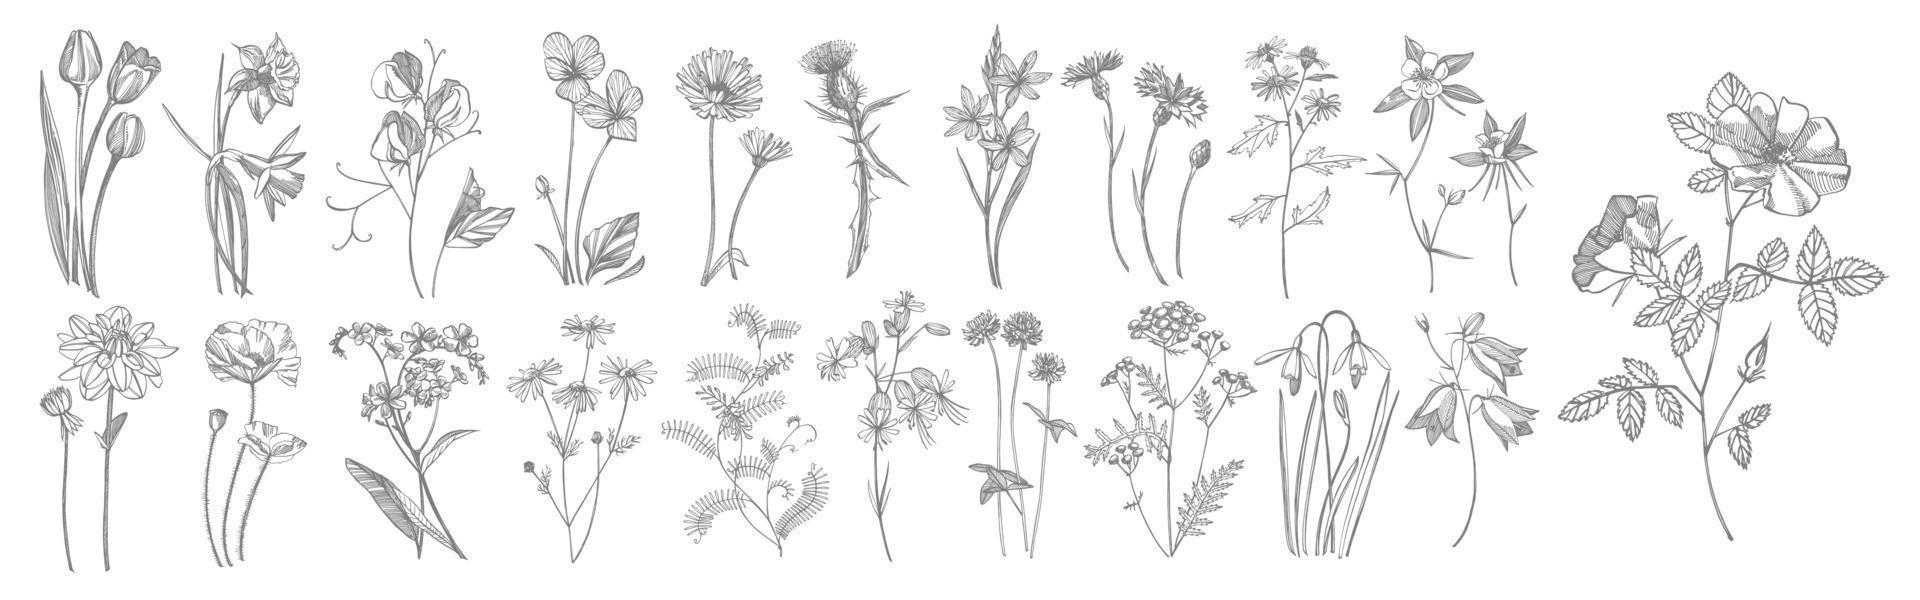 colección de mano dibujado flores y hierbas. botánico planta ilustración. Clásico medicinal hierbas bosquejo conjunto de tinta mano dibujado médico hierbas y plantas bosquejo vector